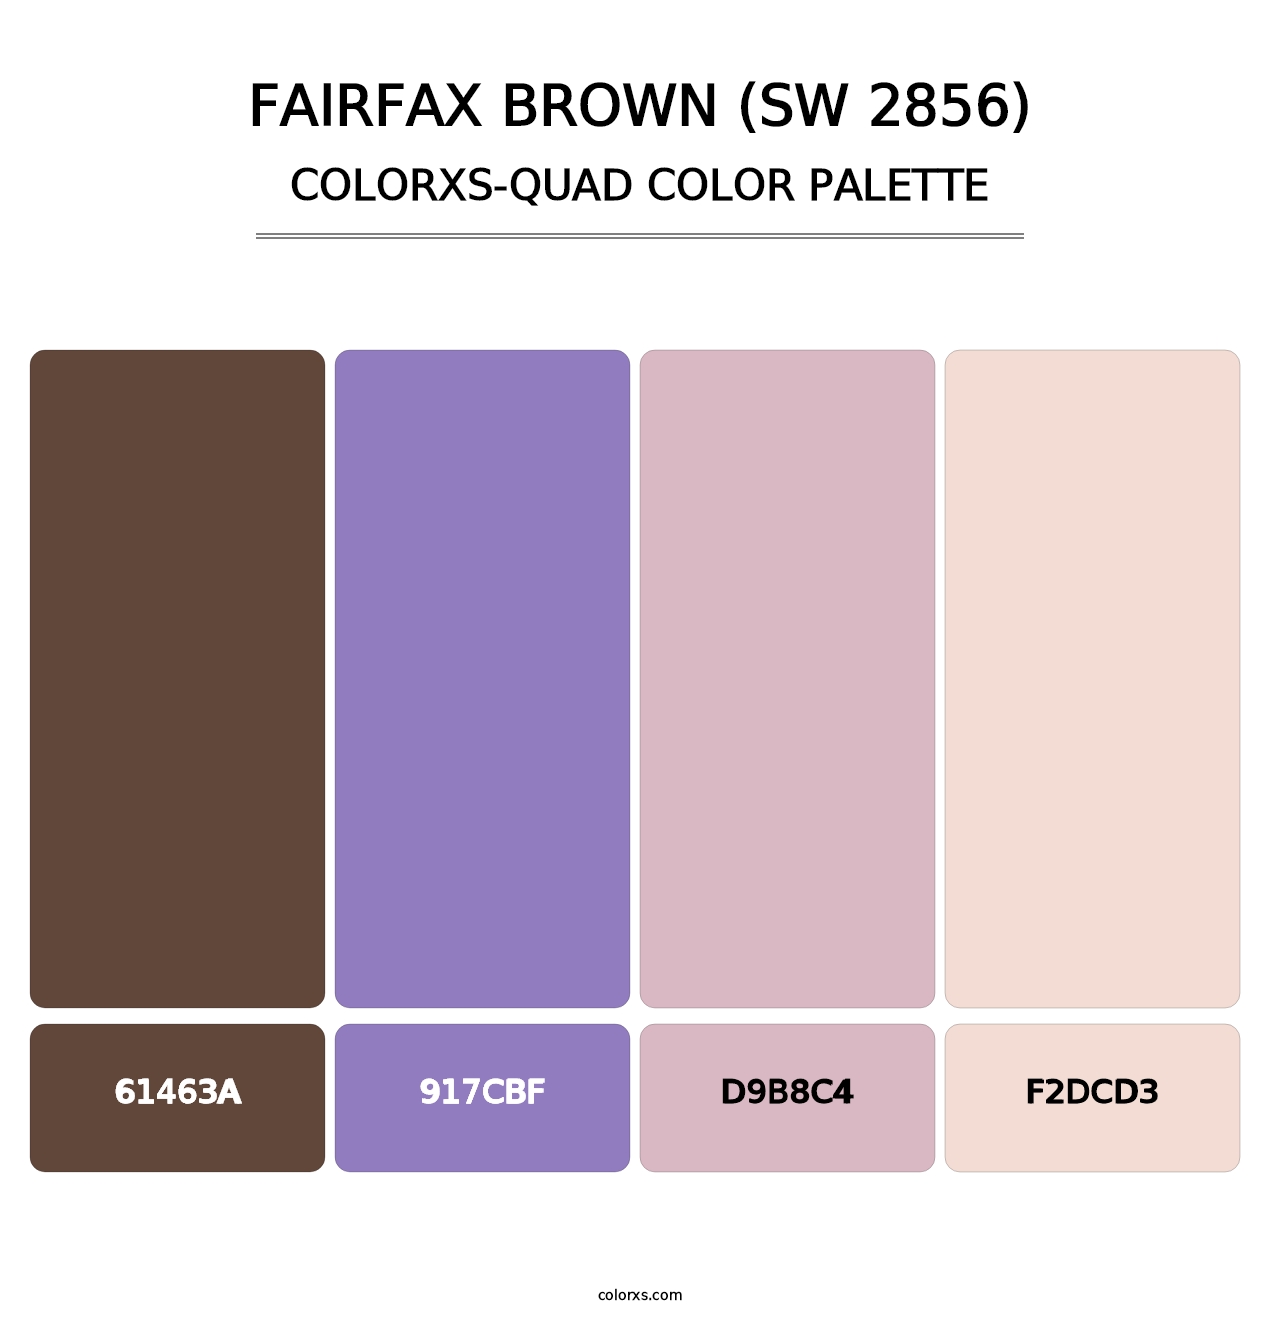 Fairfax Brown (SW 2856) - Colorxs Quad Palette